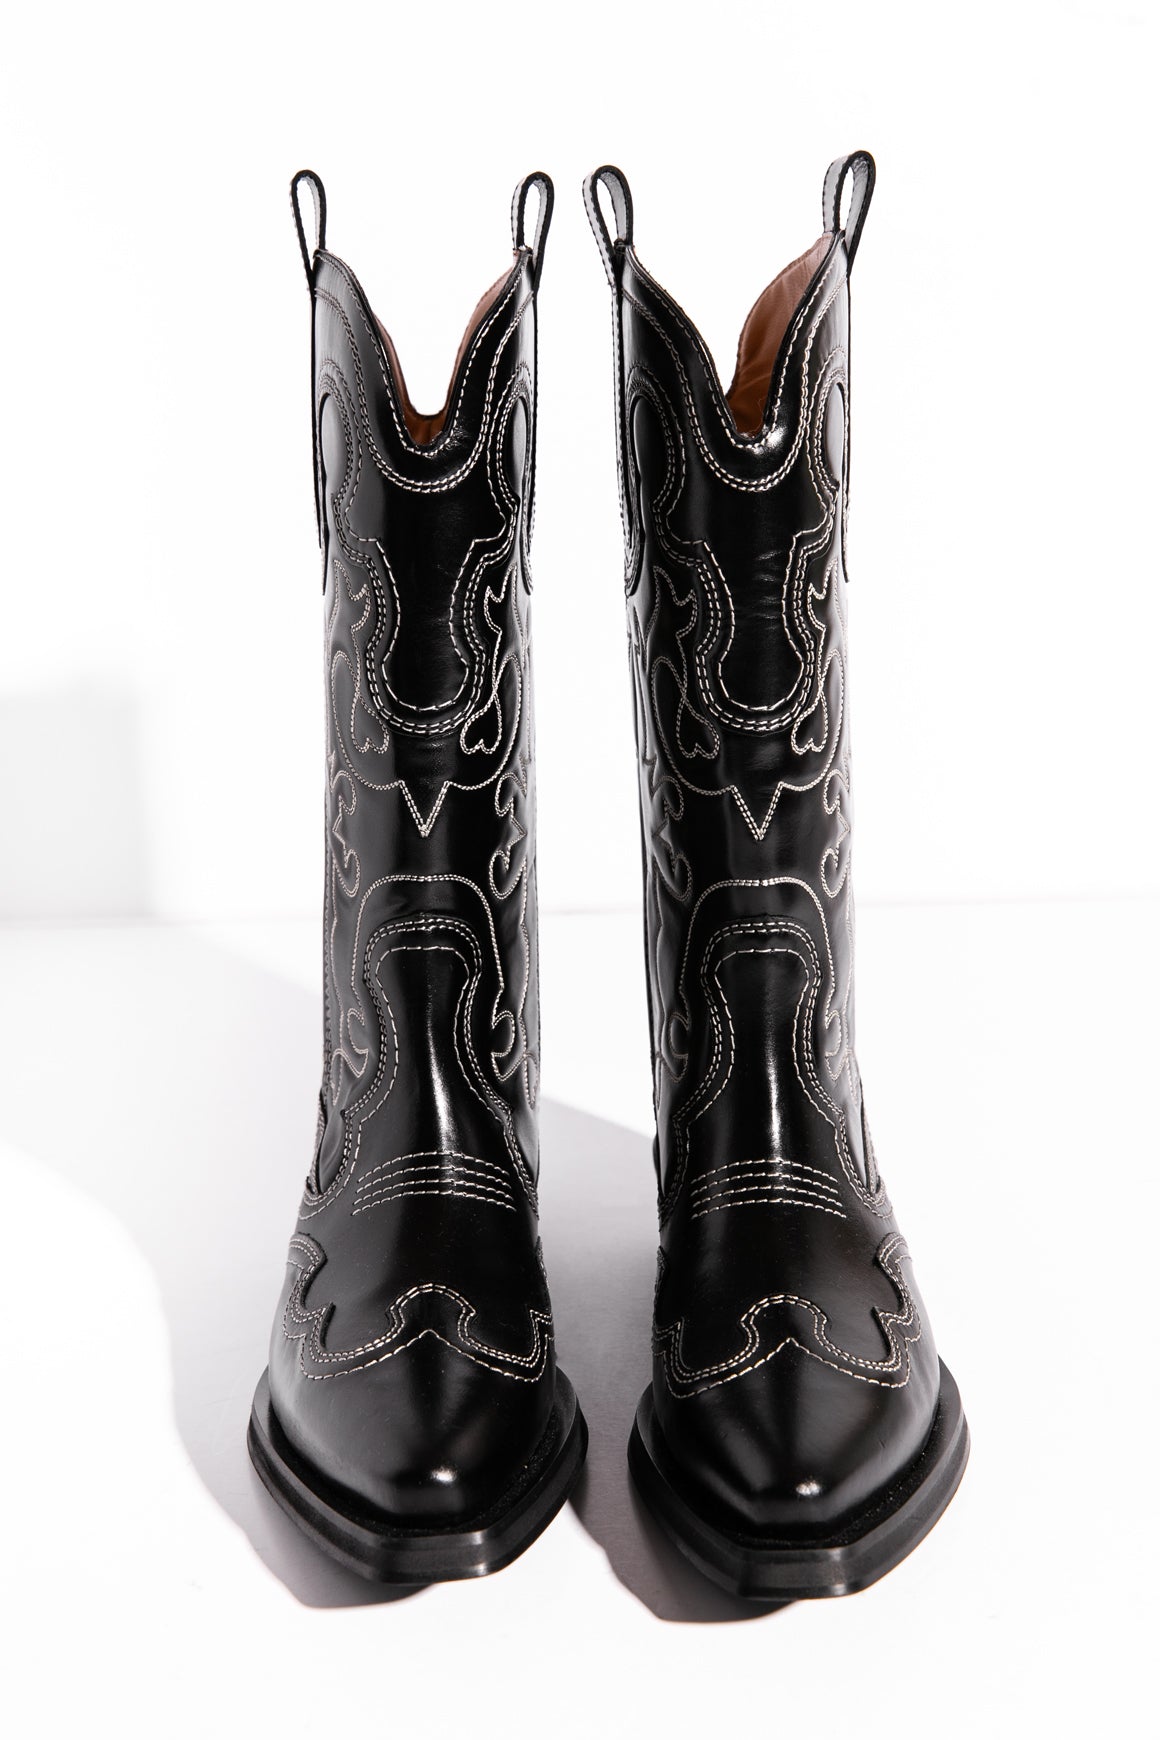 GANNI Black Western Boots (Sz. 37)